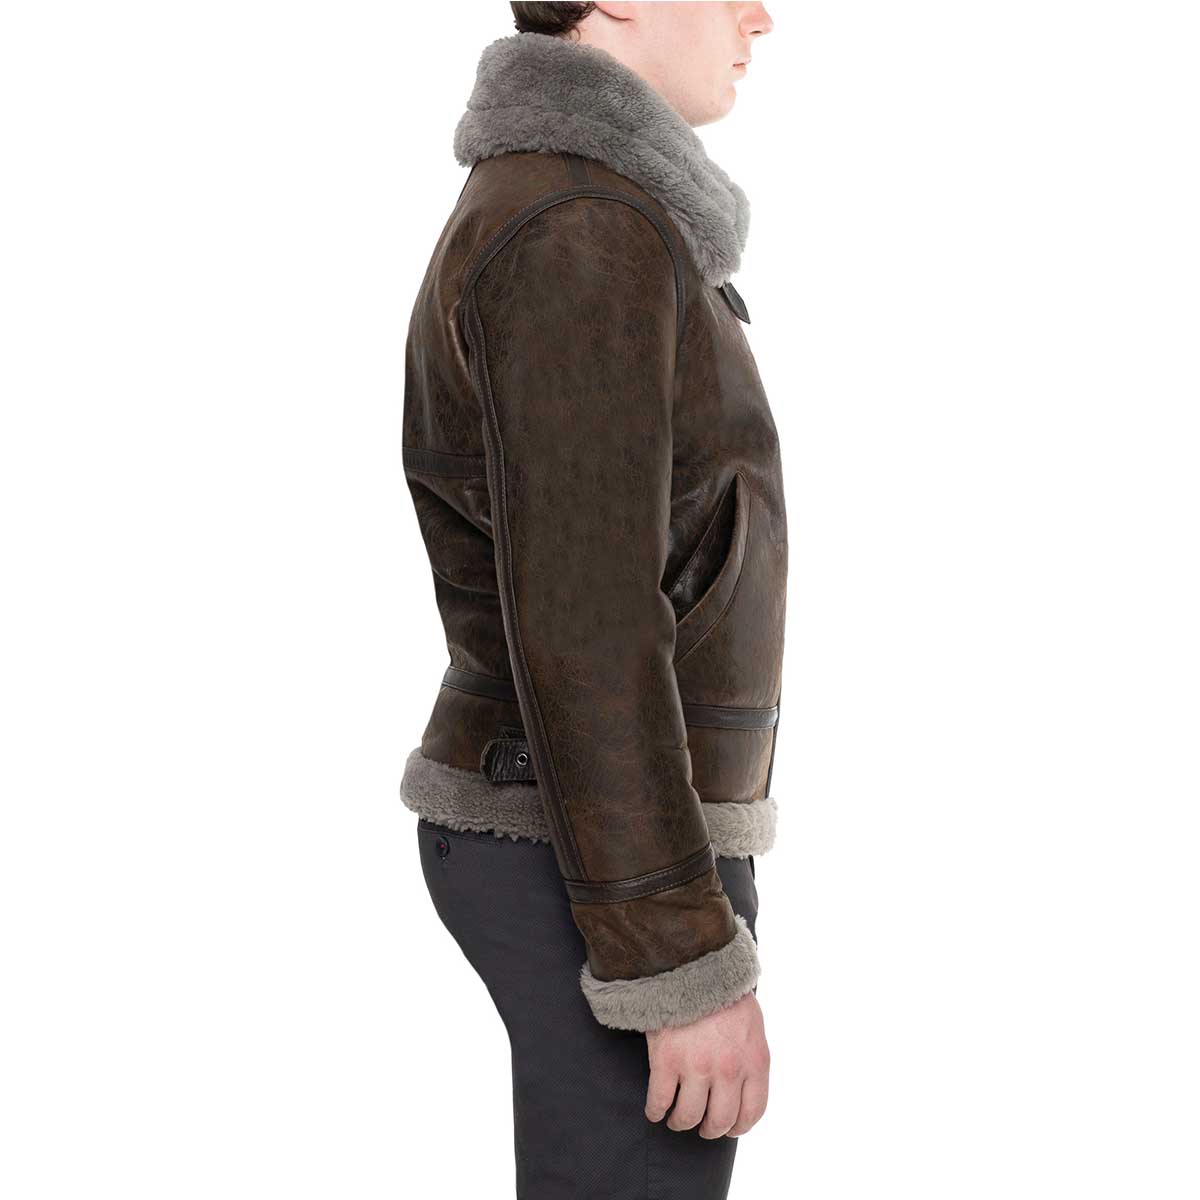 Men's dark brown sheepskin jacket